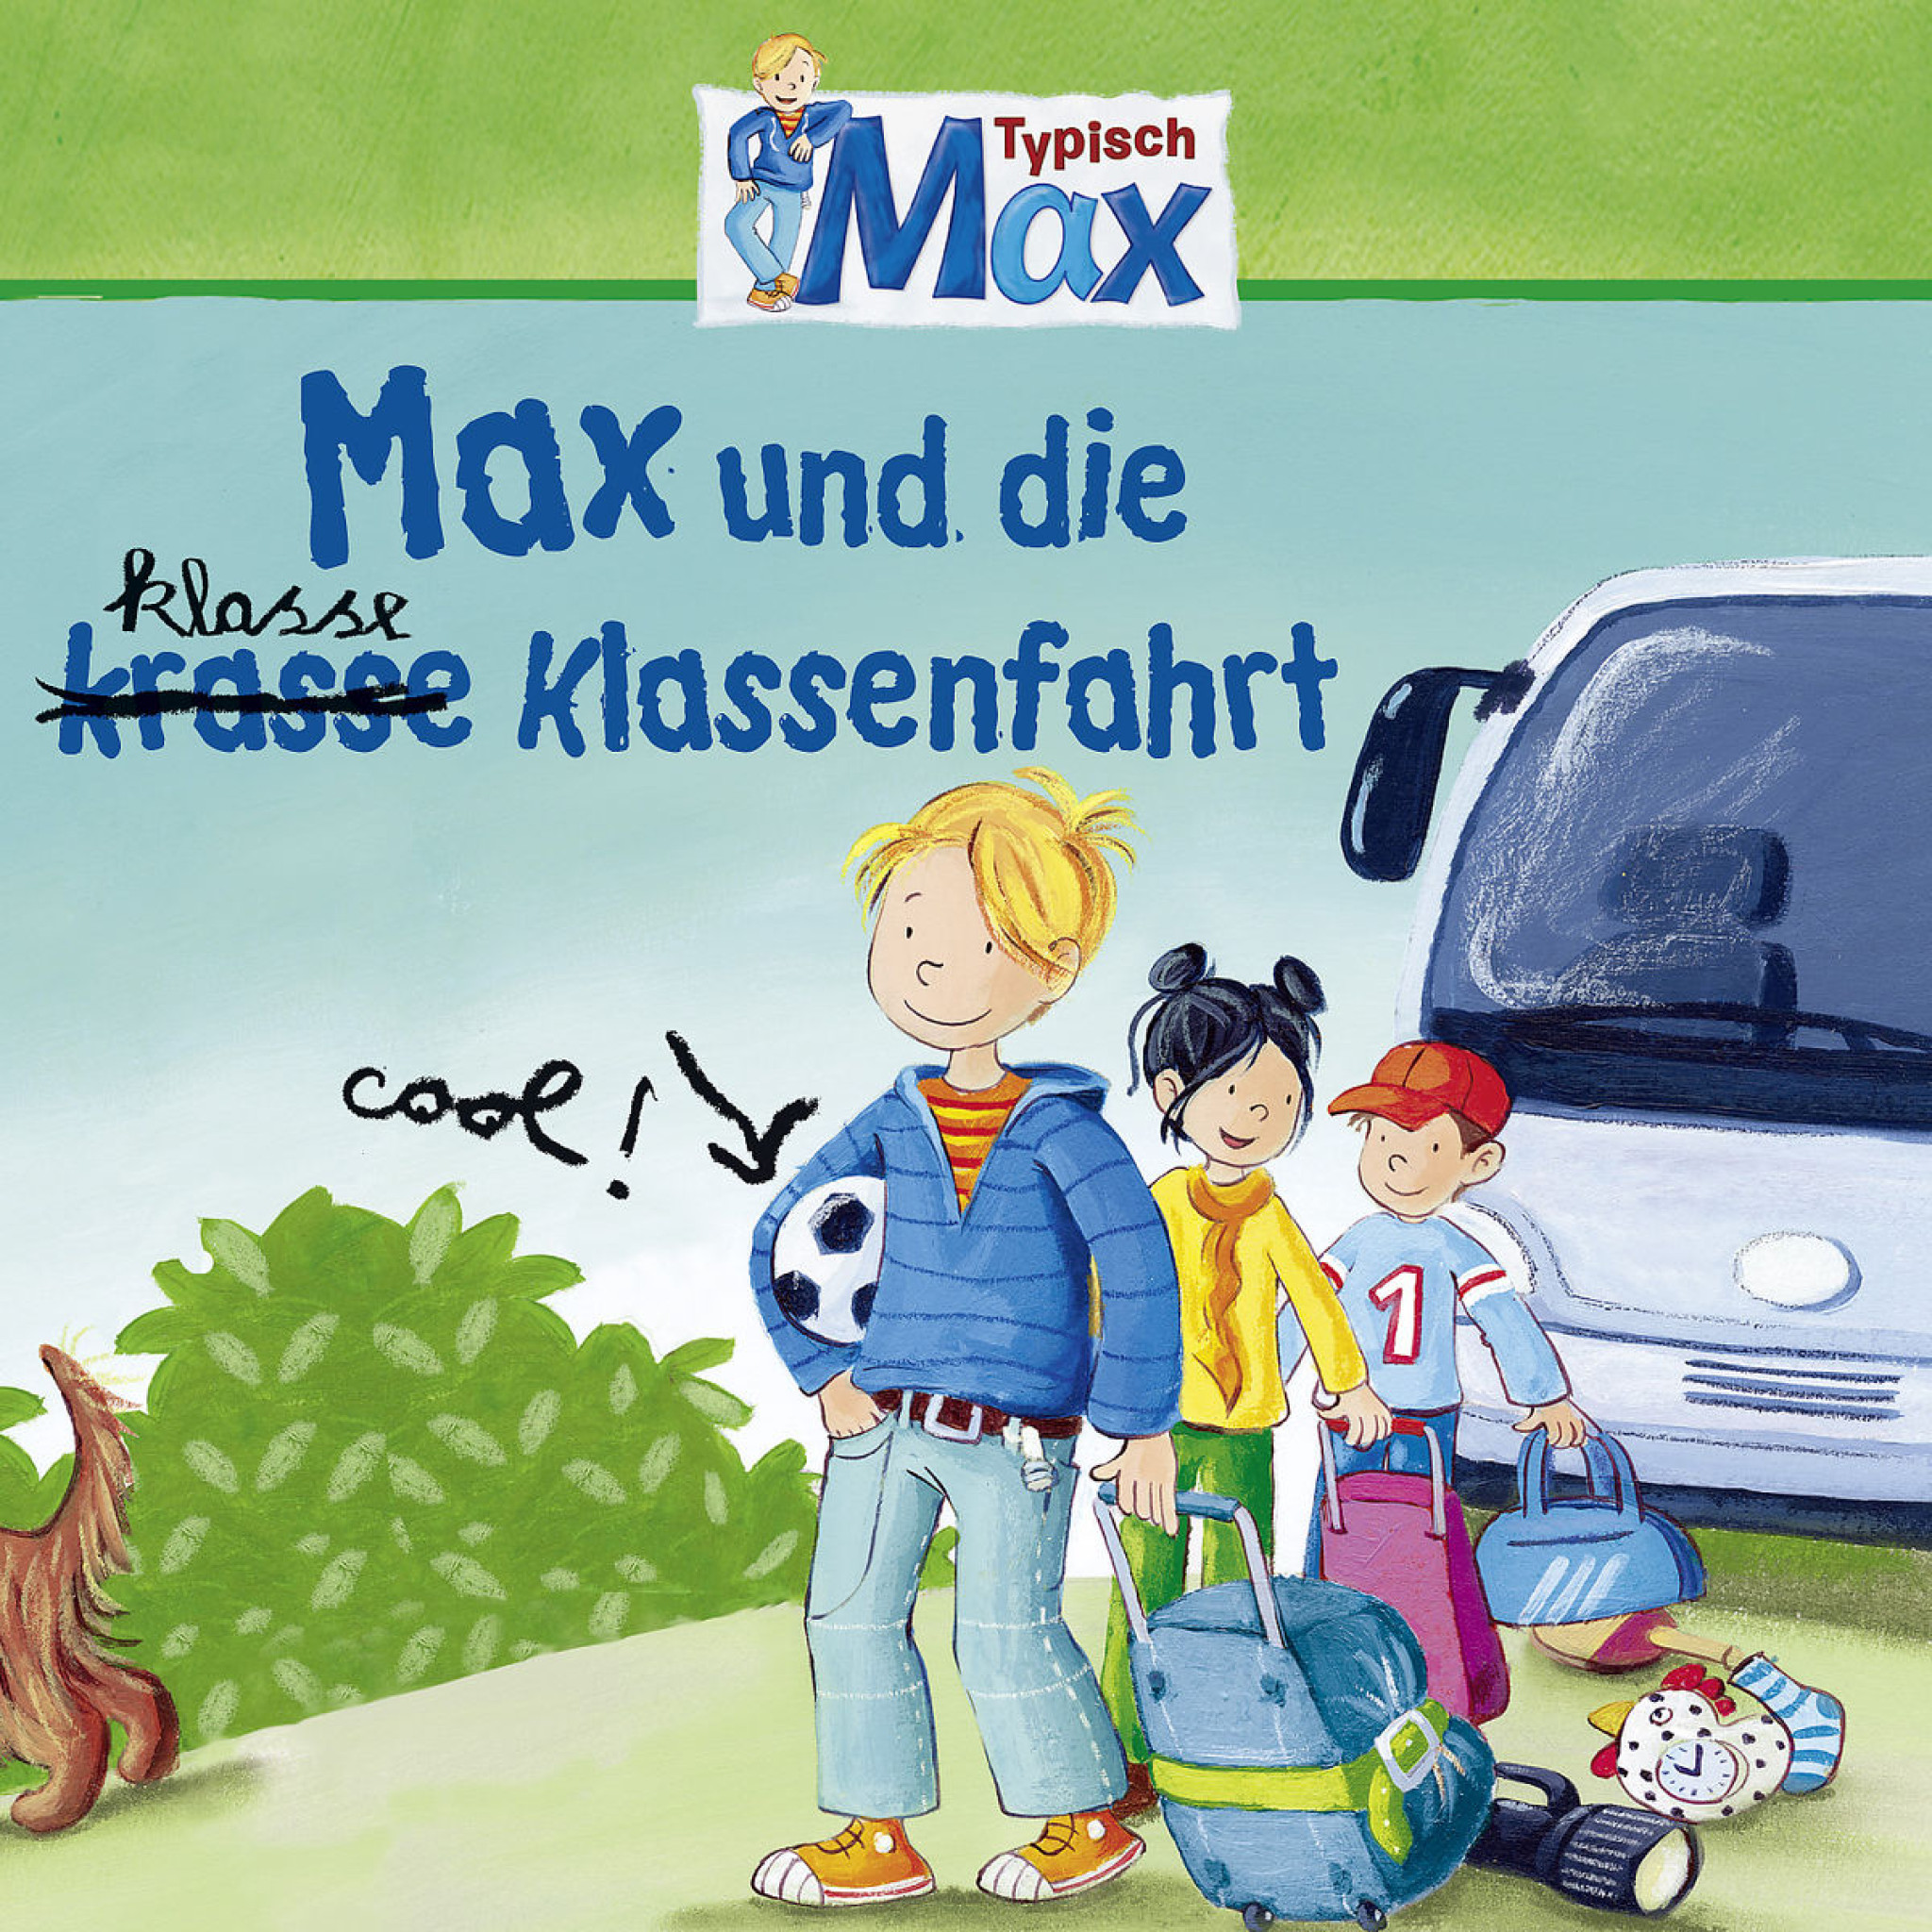 04: Max und die kl(r)asse Klassenfahrt: Max